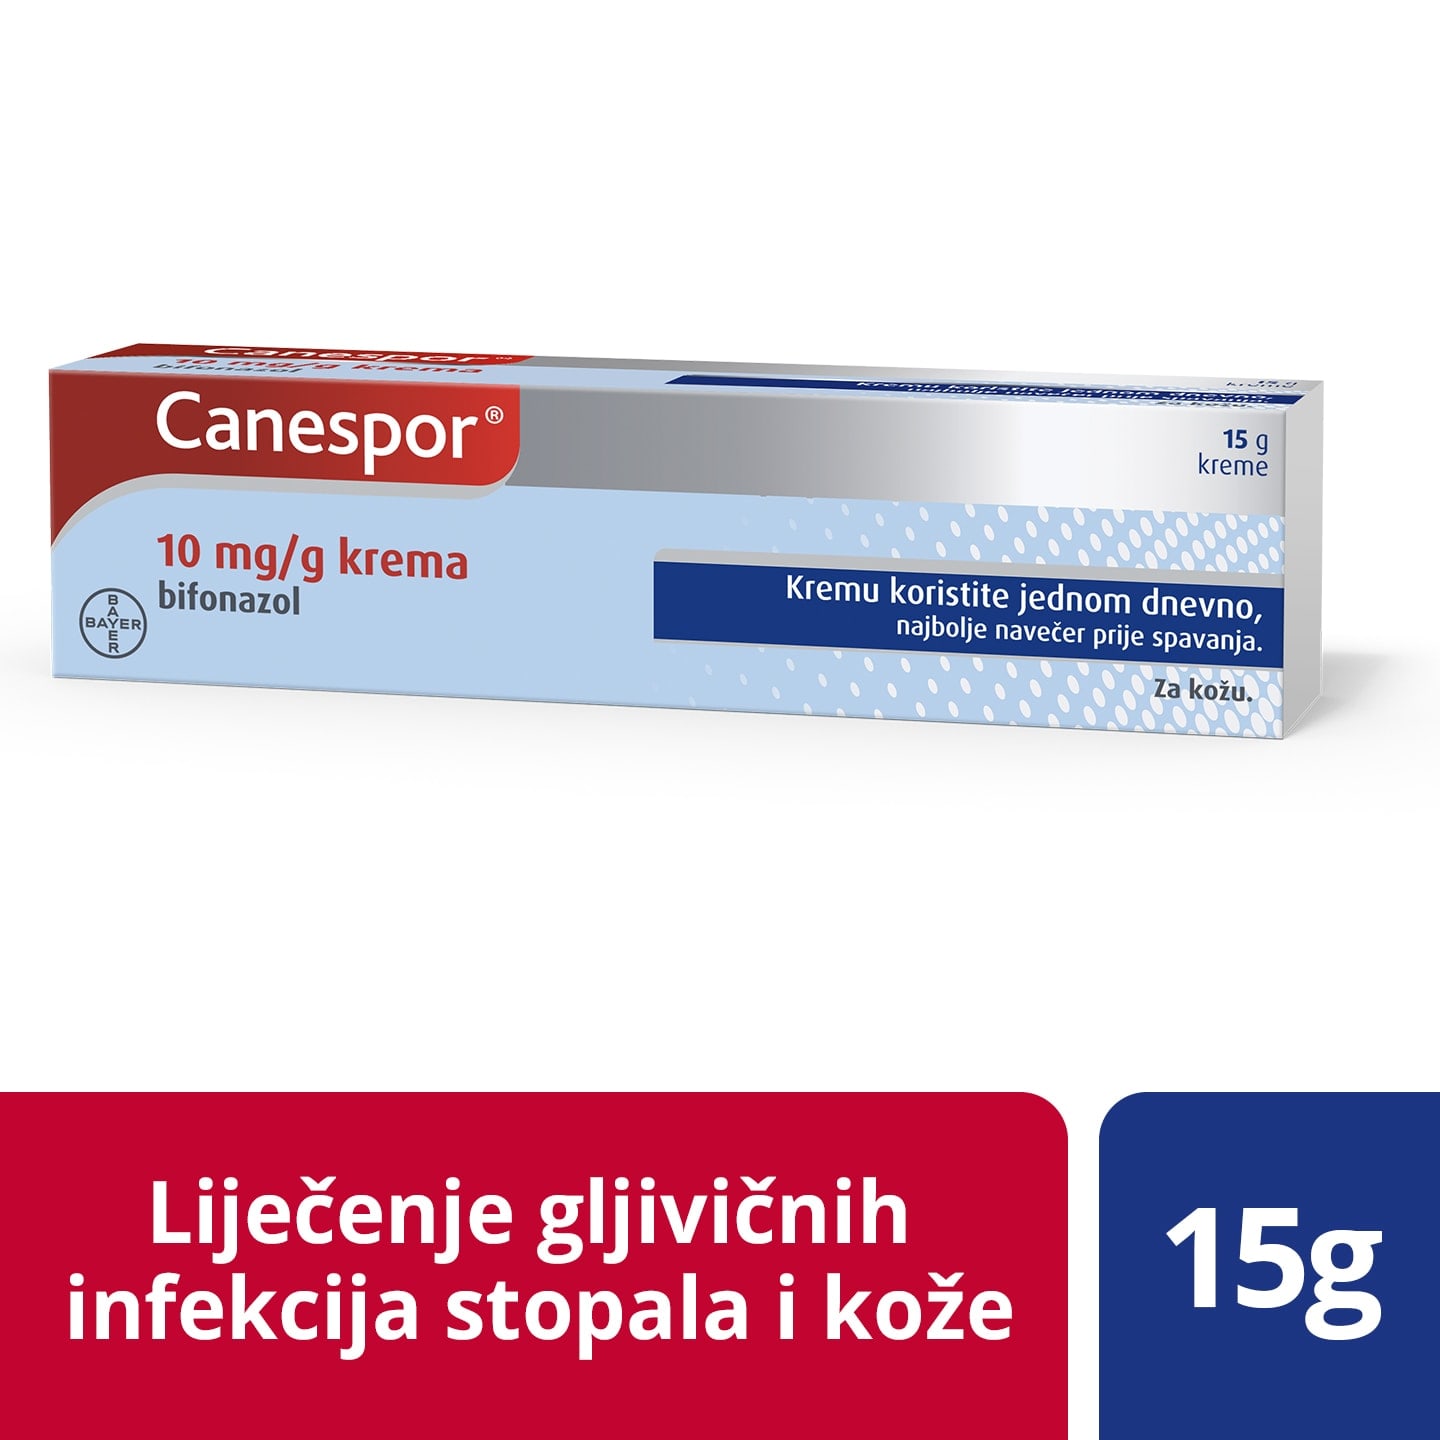 Canespor® 10 mg/g krema 